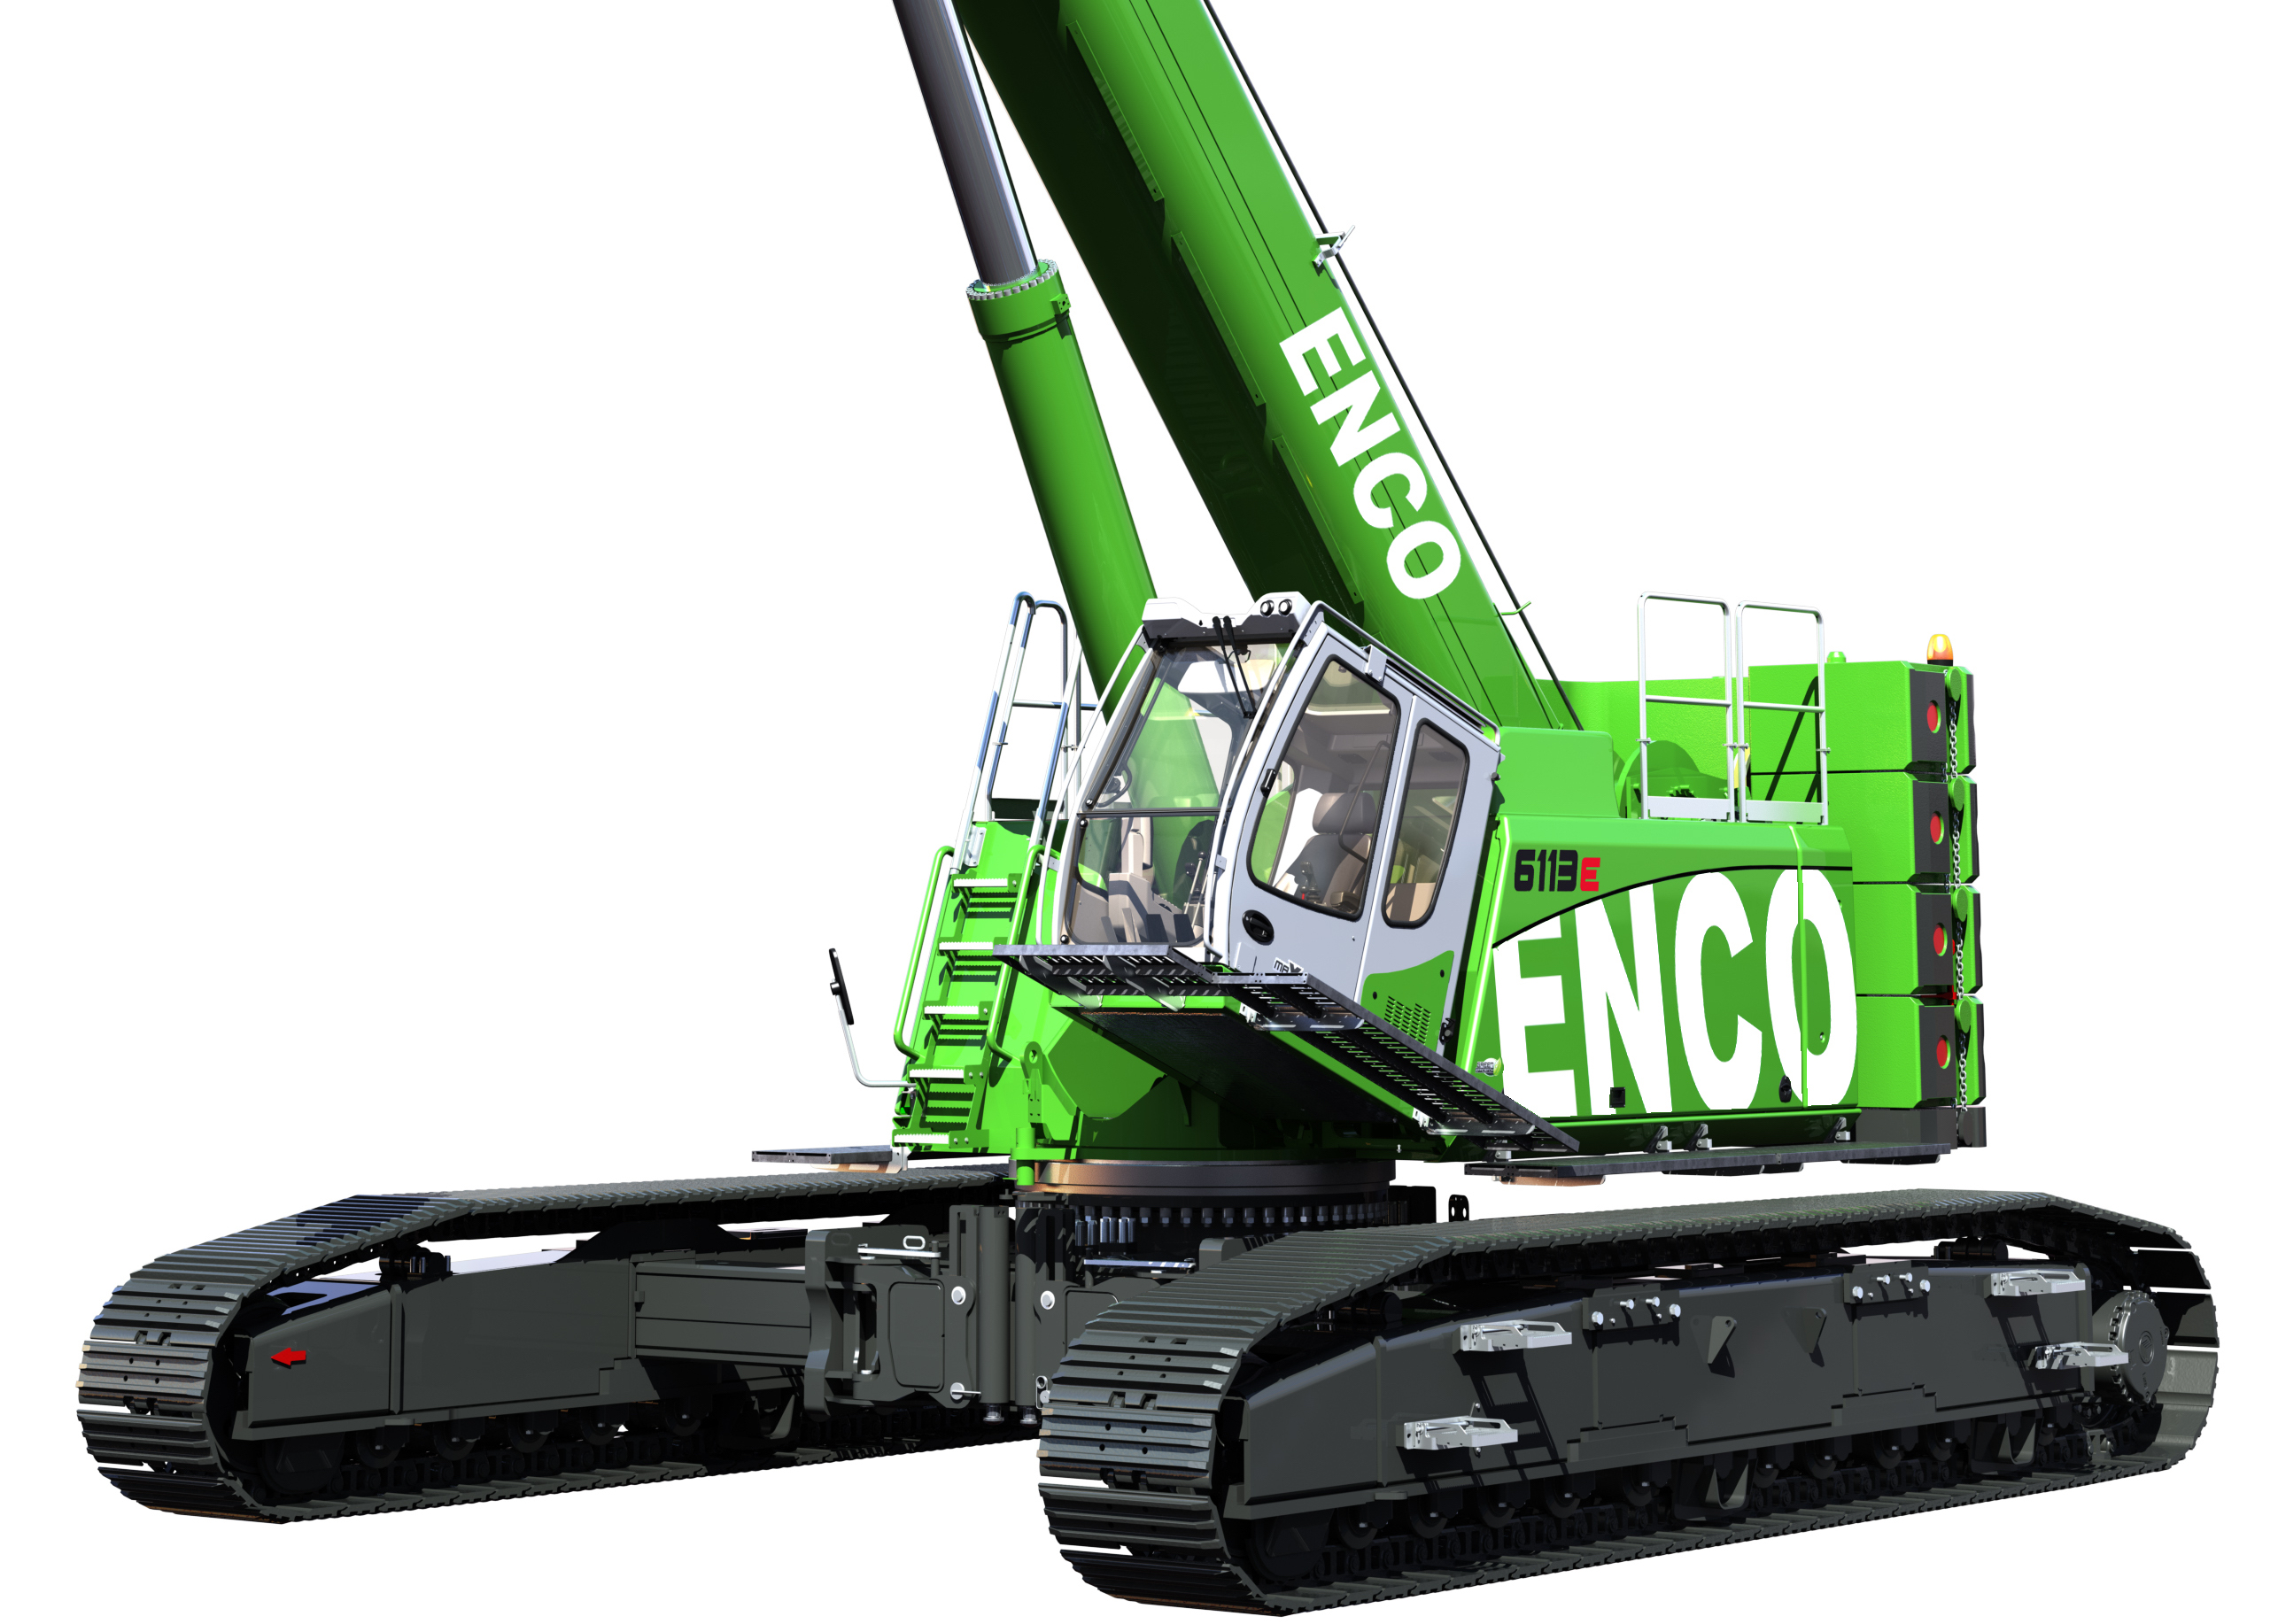 Enco étend sa gamme avec de nouvelles grues Sennebogen